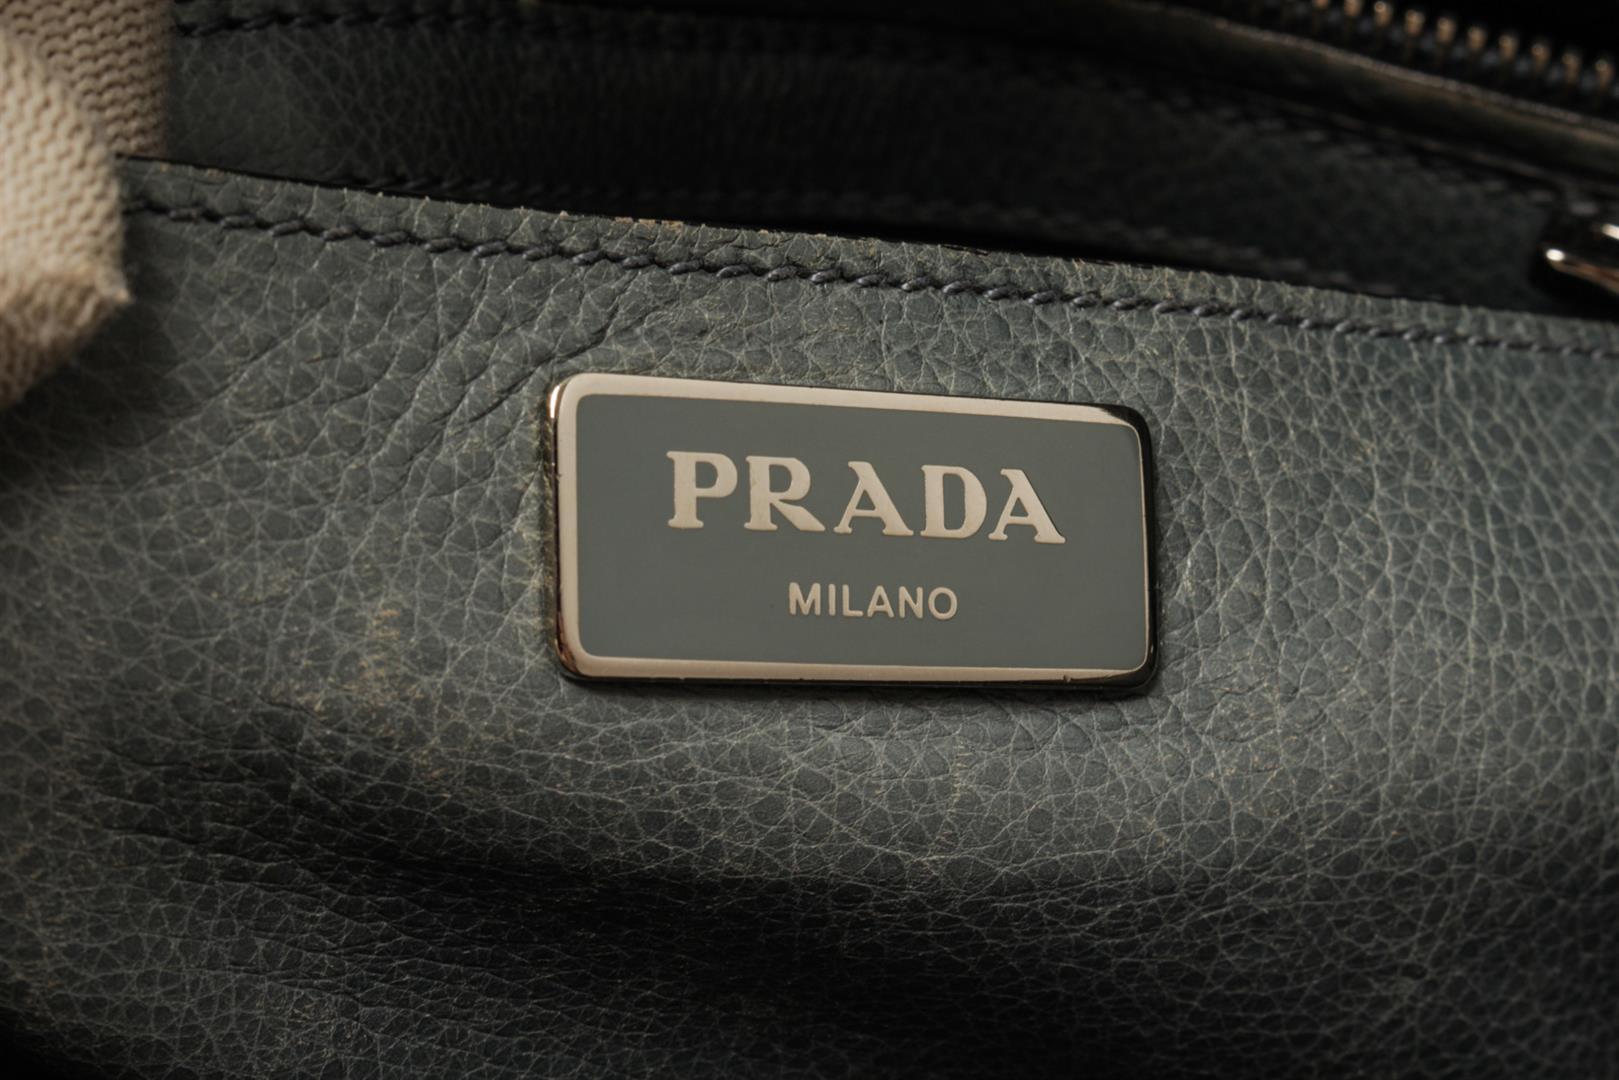 Prada Grey Leather 2way Tote Bag